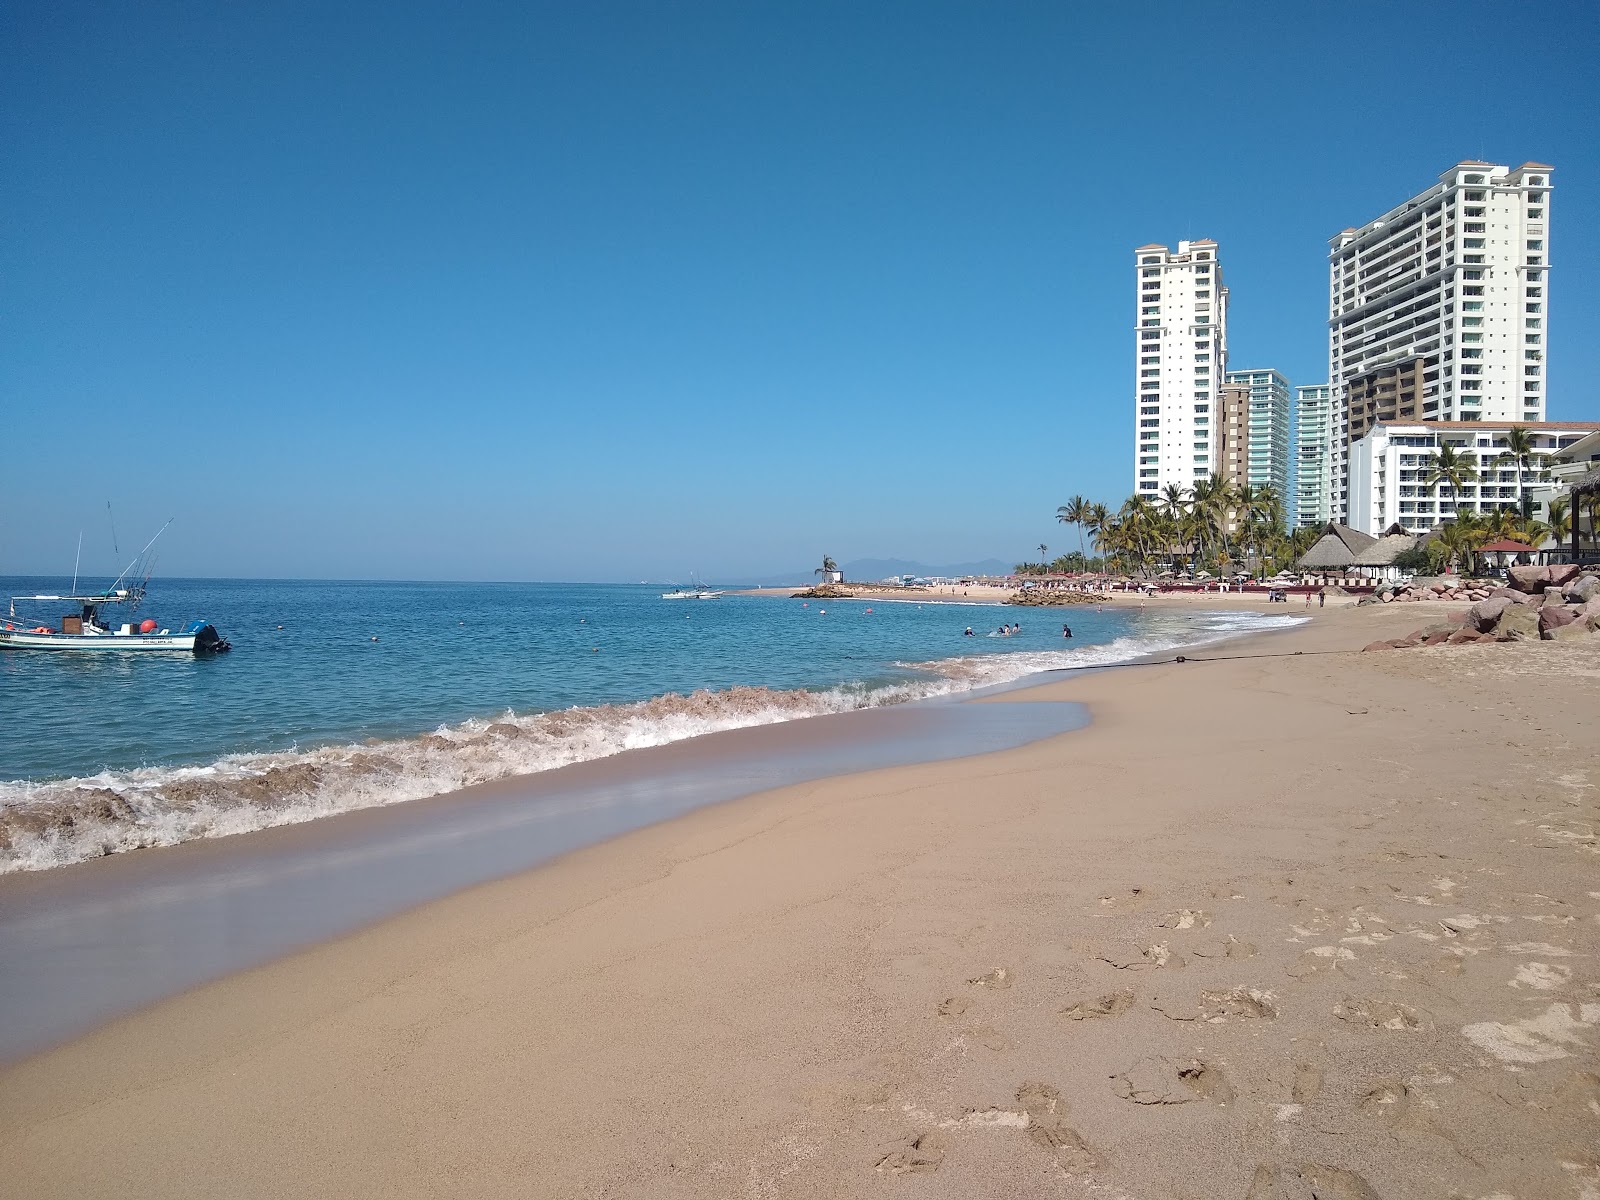 Los Tules beach'in fotoğrafı geniş plaj ile birlikte